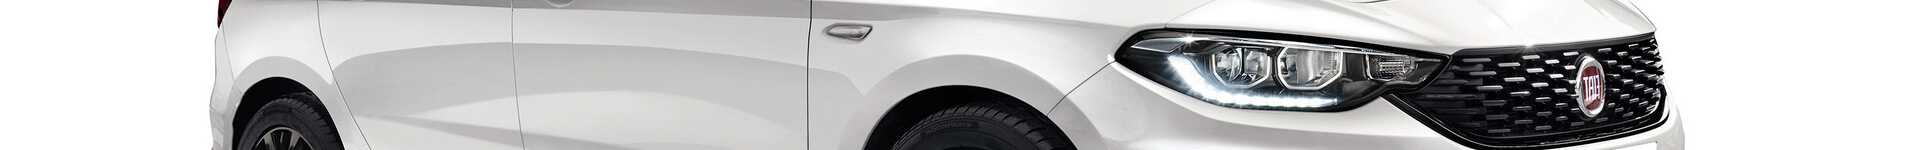 Biały Fiat Tipo na abonament i wynajem - banner wersja hatchback - przód prawa